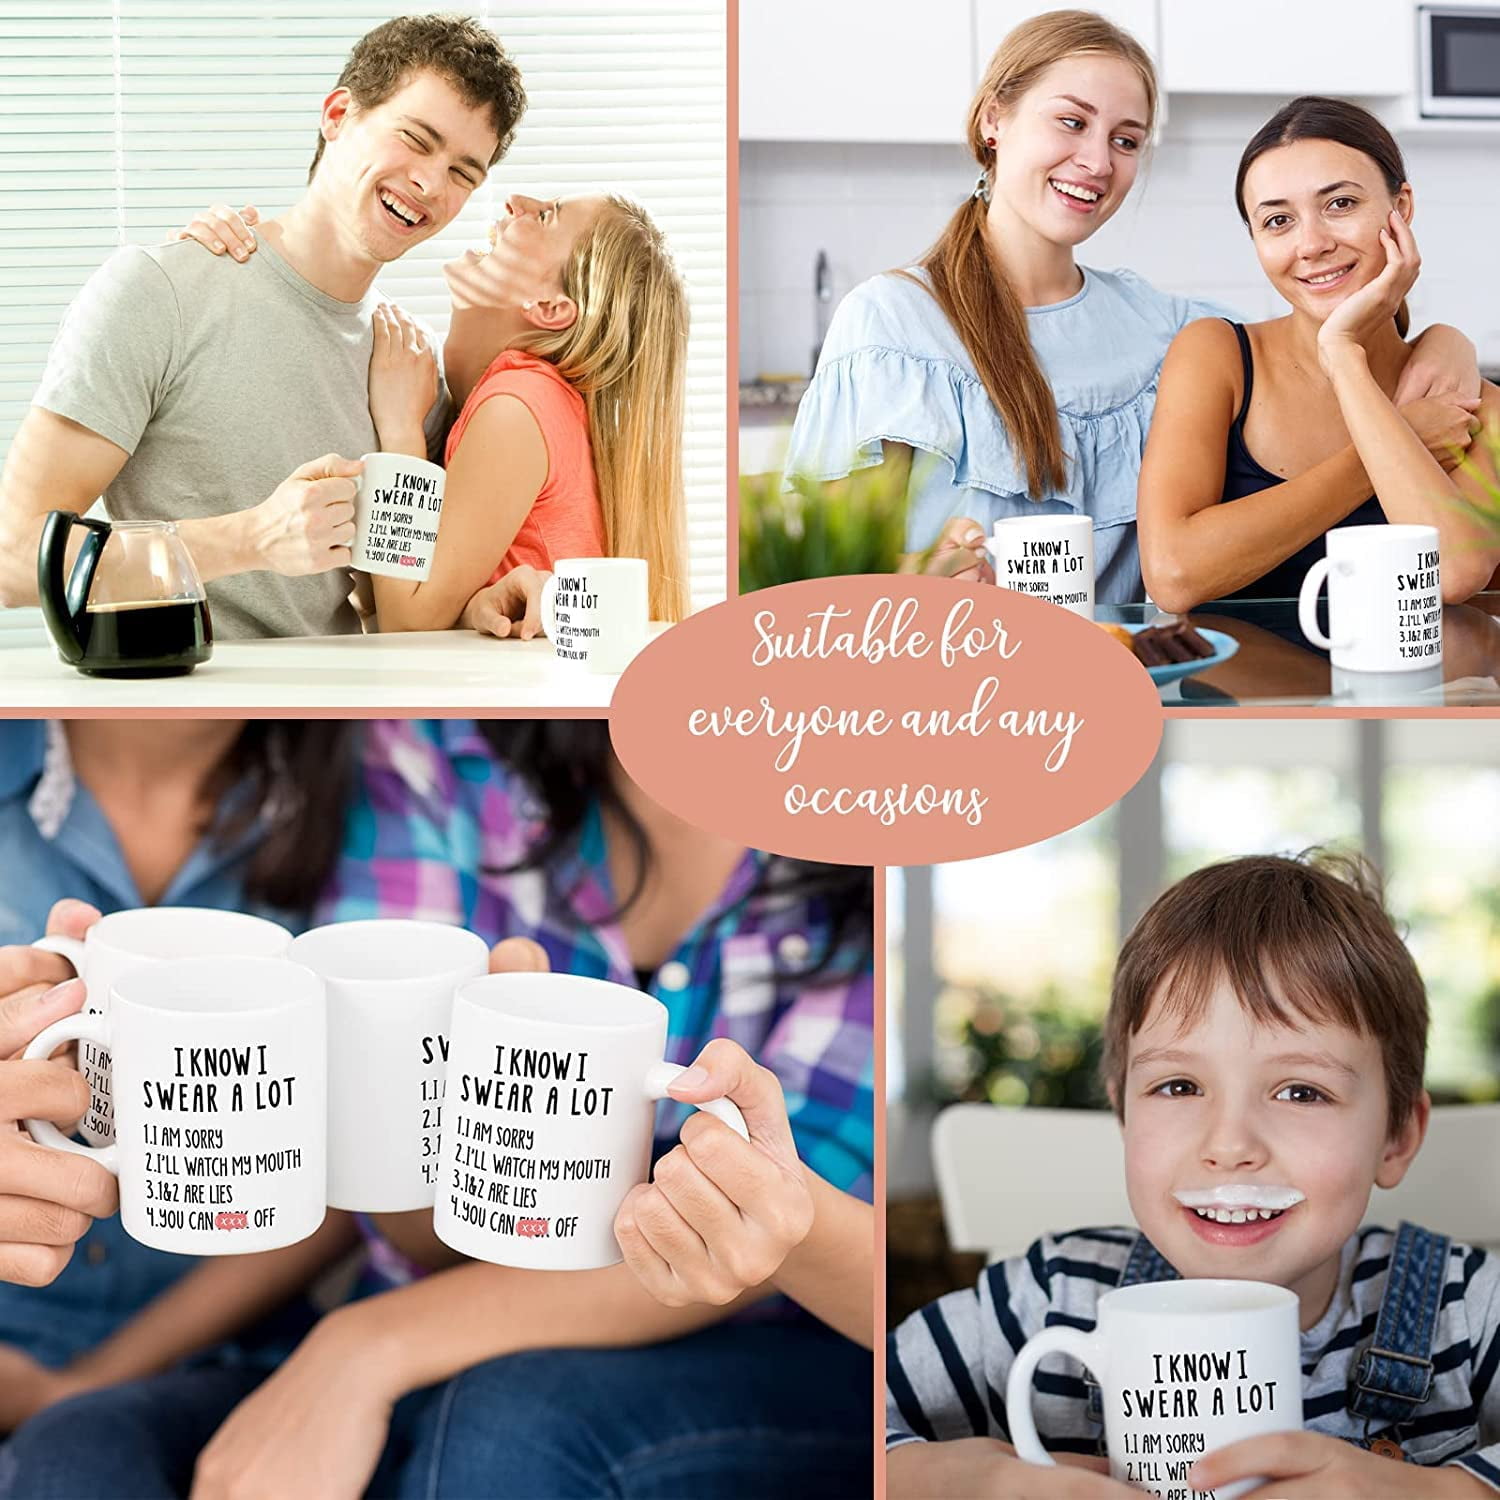 12oz Funny White Elephant Coffee Mug - Gag Gift for Adults, Christmas and  Birthdays